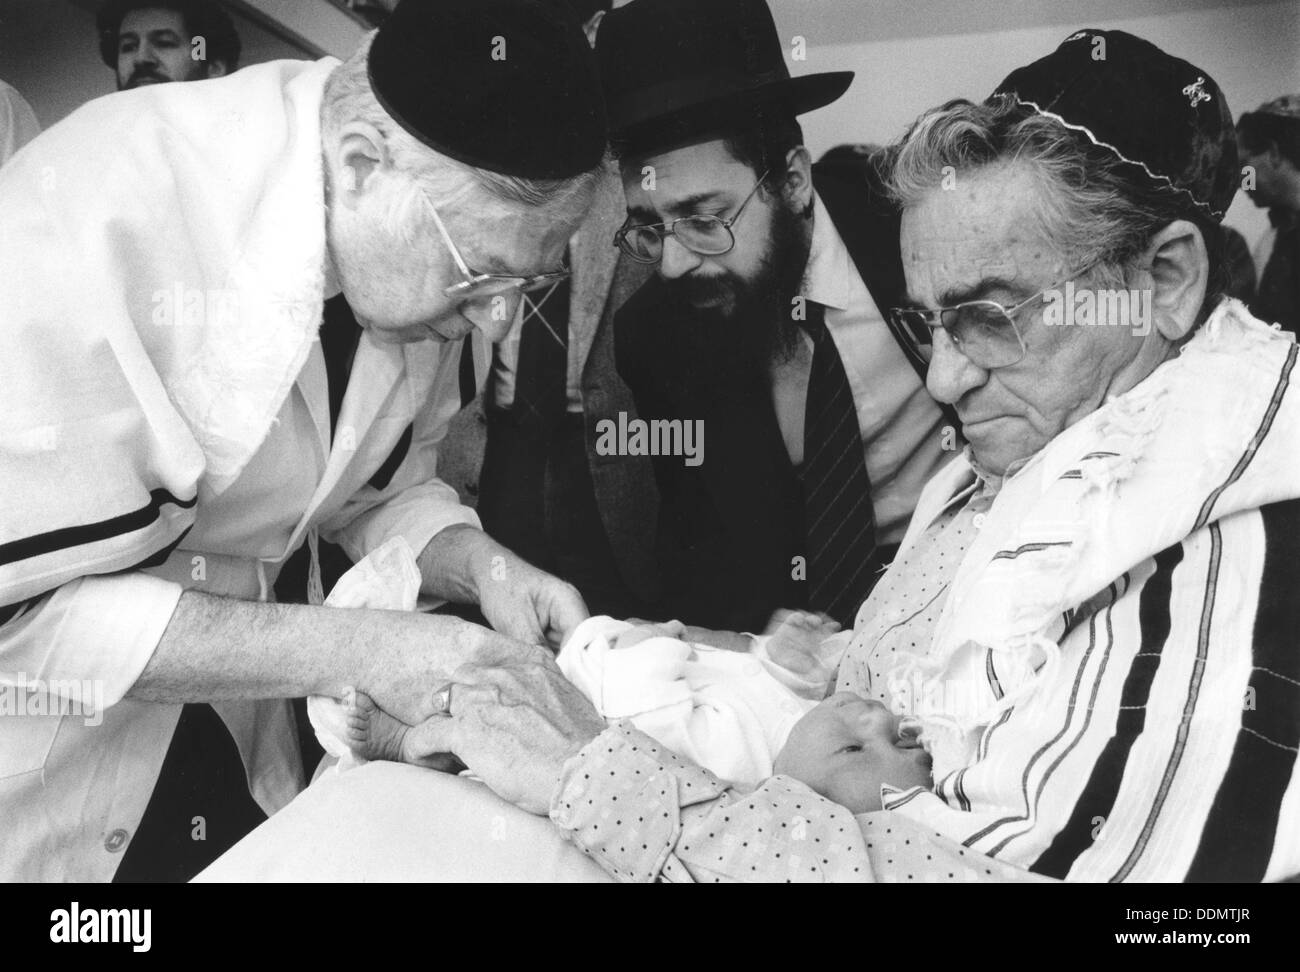 La circuncisión ritual judío, 21 de julio de 2000. Artista: Desconocido Foto de stock